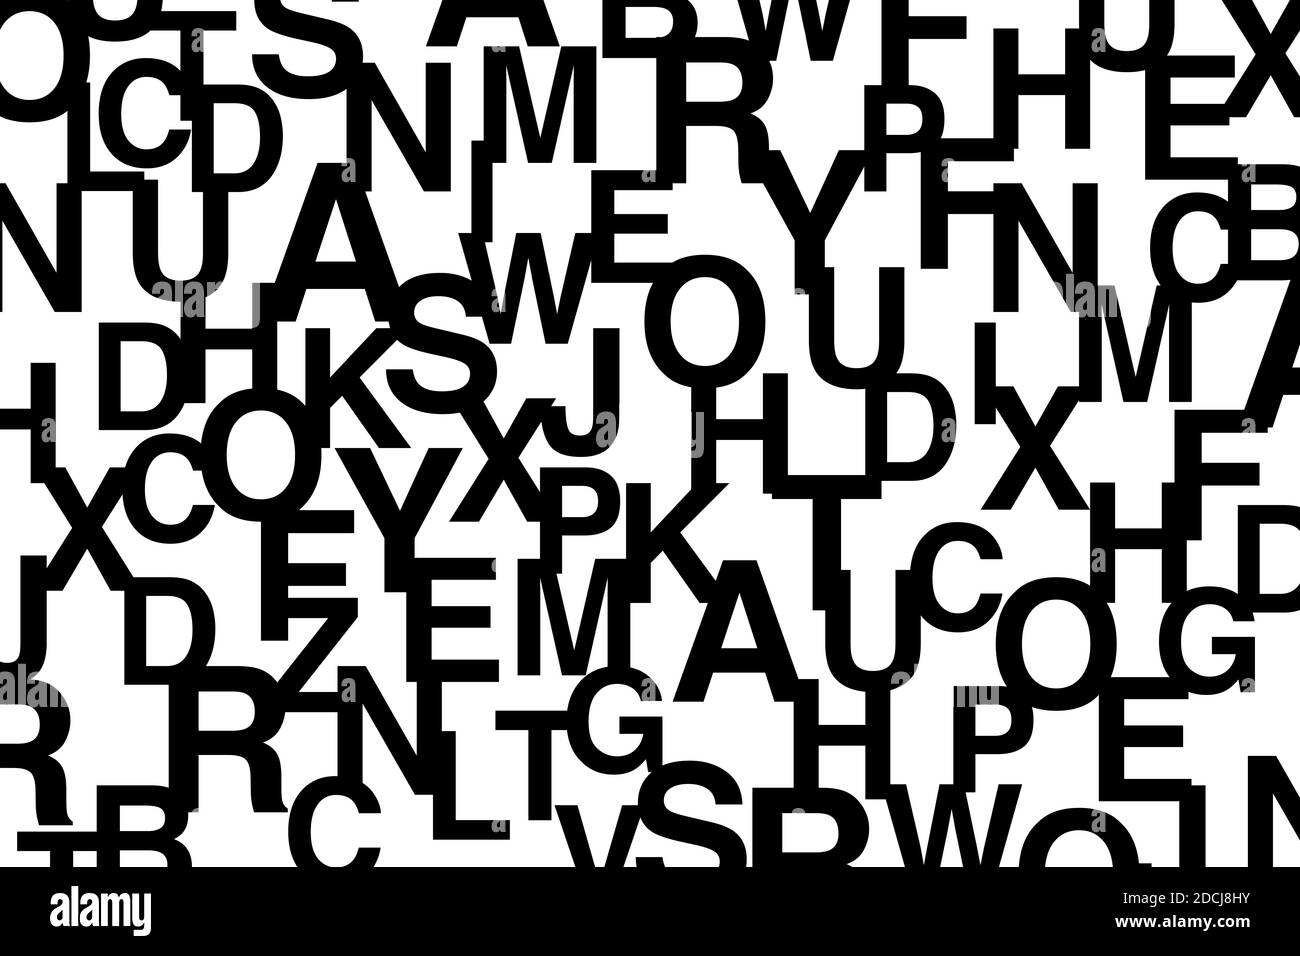 Schema di sfondo astratto composto da lettere. Arte vettoriale moderna e tipografica Foto Stock